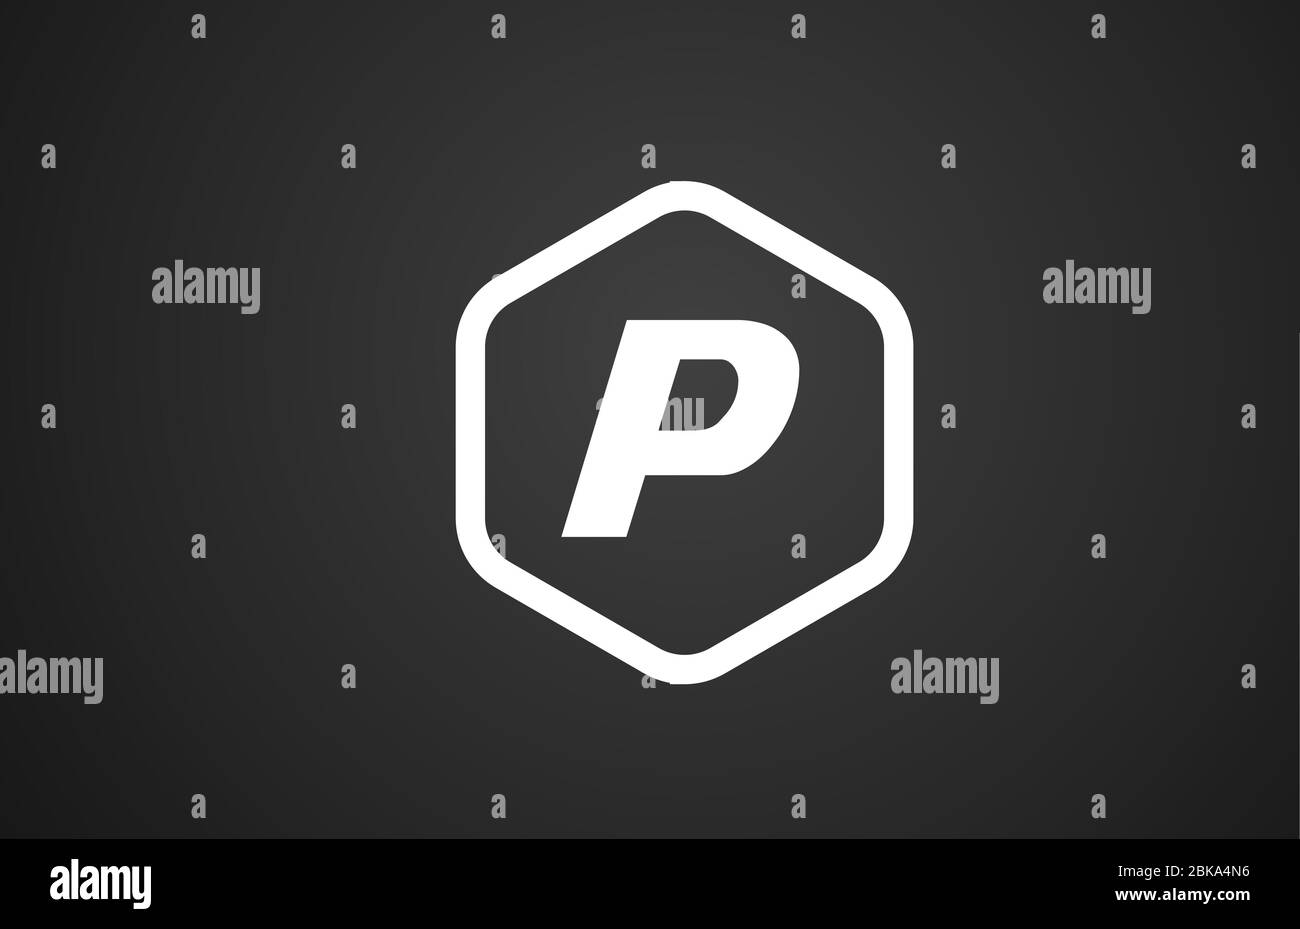 P letra del alfabeto en blanco y negro logotipo icono con rhombus para empresas y empresas Ilustración del Vector